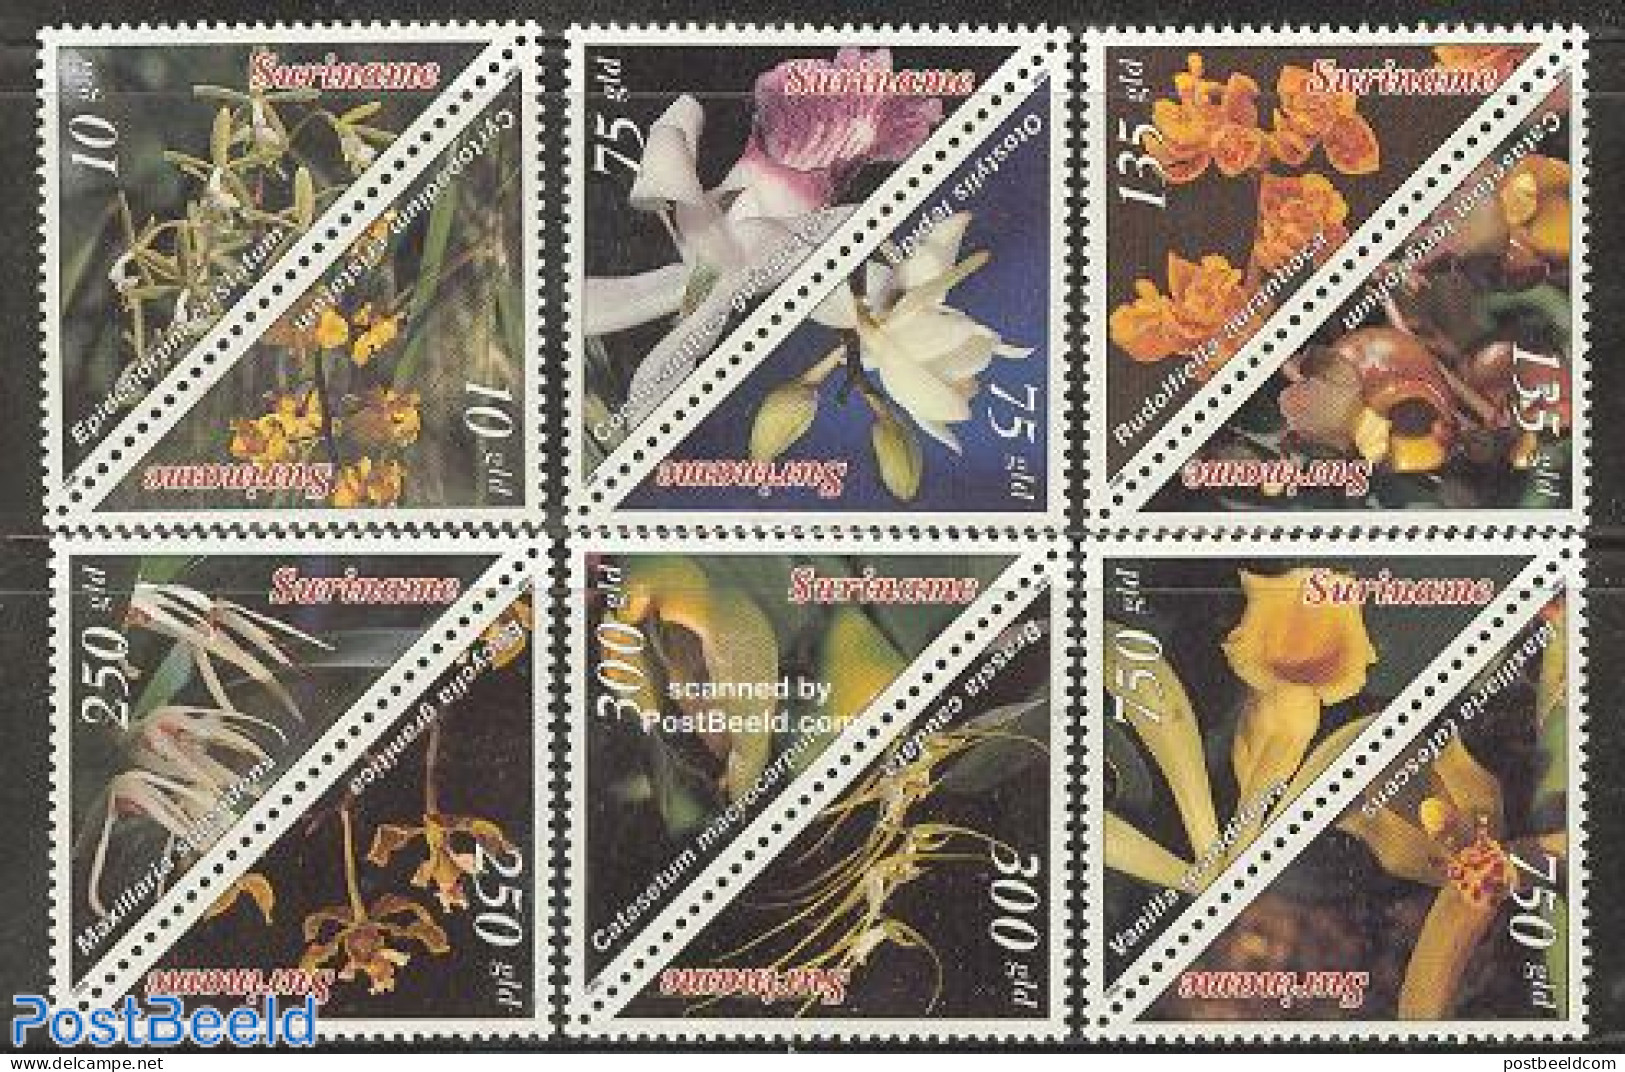 Suriname, Republic 1996 Orchids 6x2v, Mint NH, Nature - Flowers & Plants - Orchids - Suriname